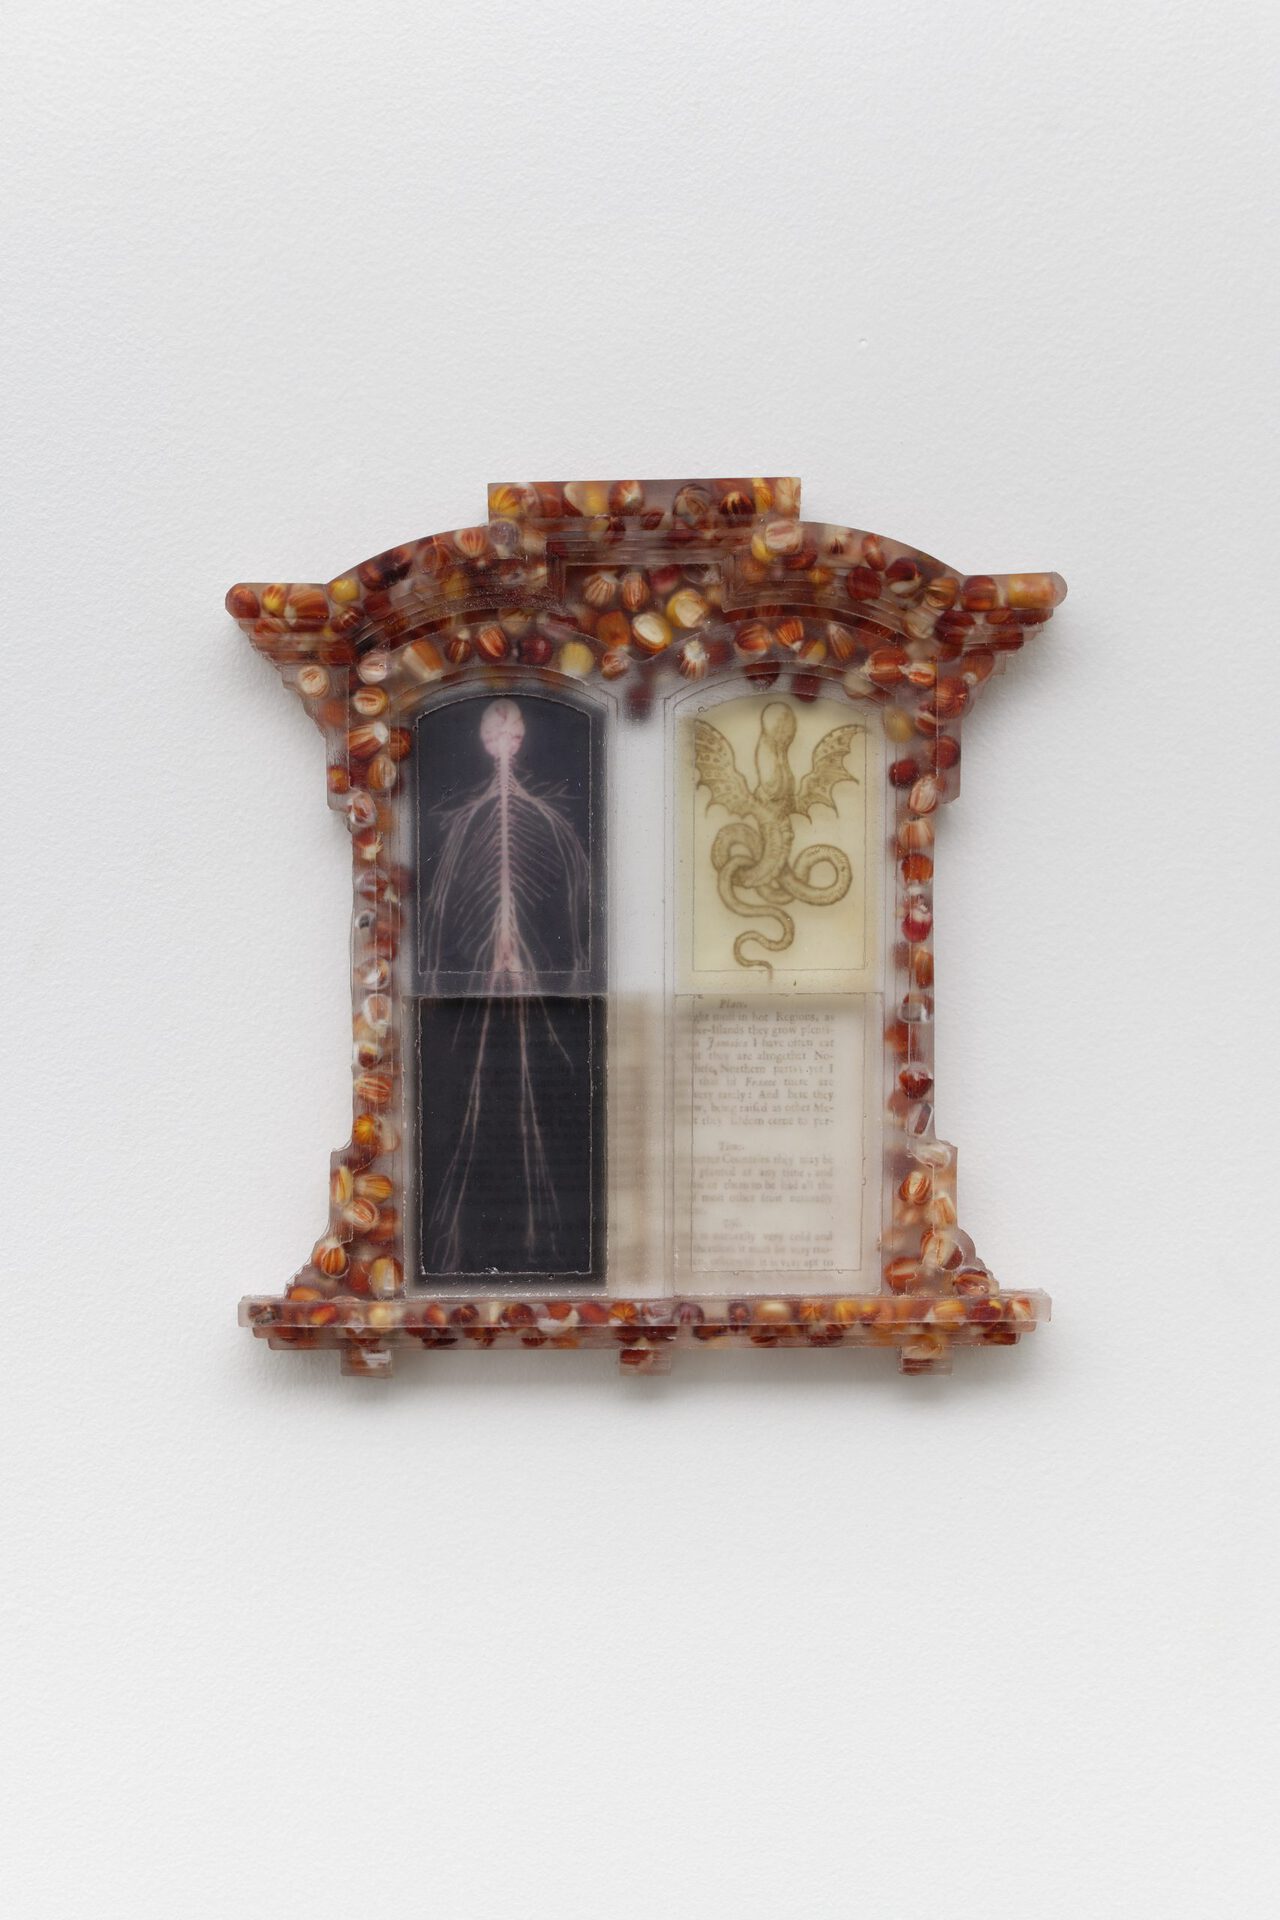 Sula Bermúdez-Silverman, Quò tendis?, 2022, epoxy resin, maize, transparency film, 22.9 x 20.3 x 2.5 cm, unique